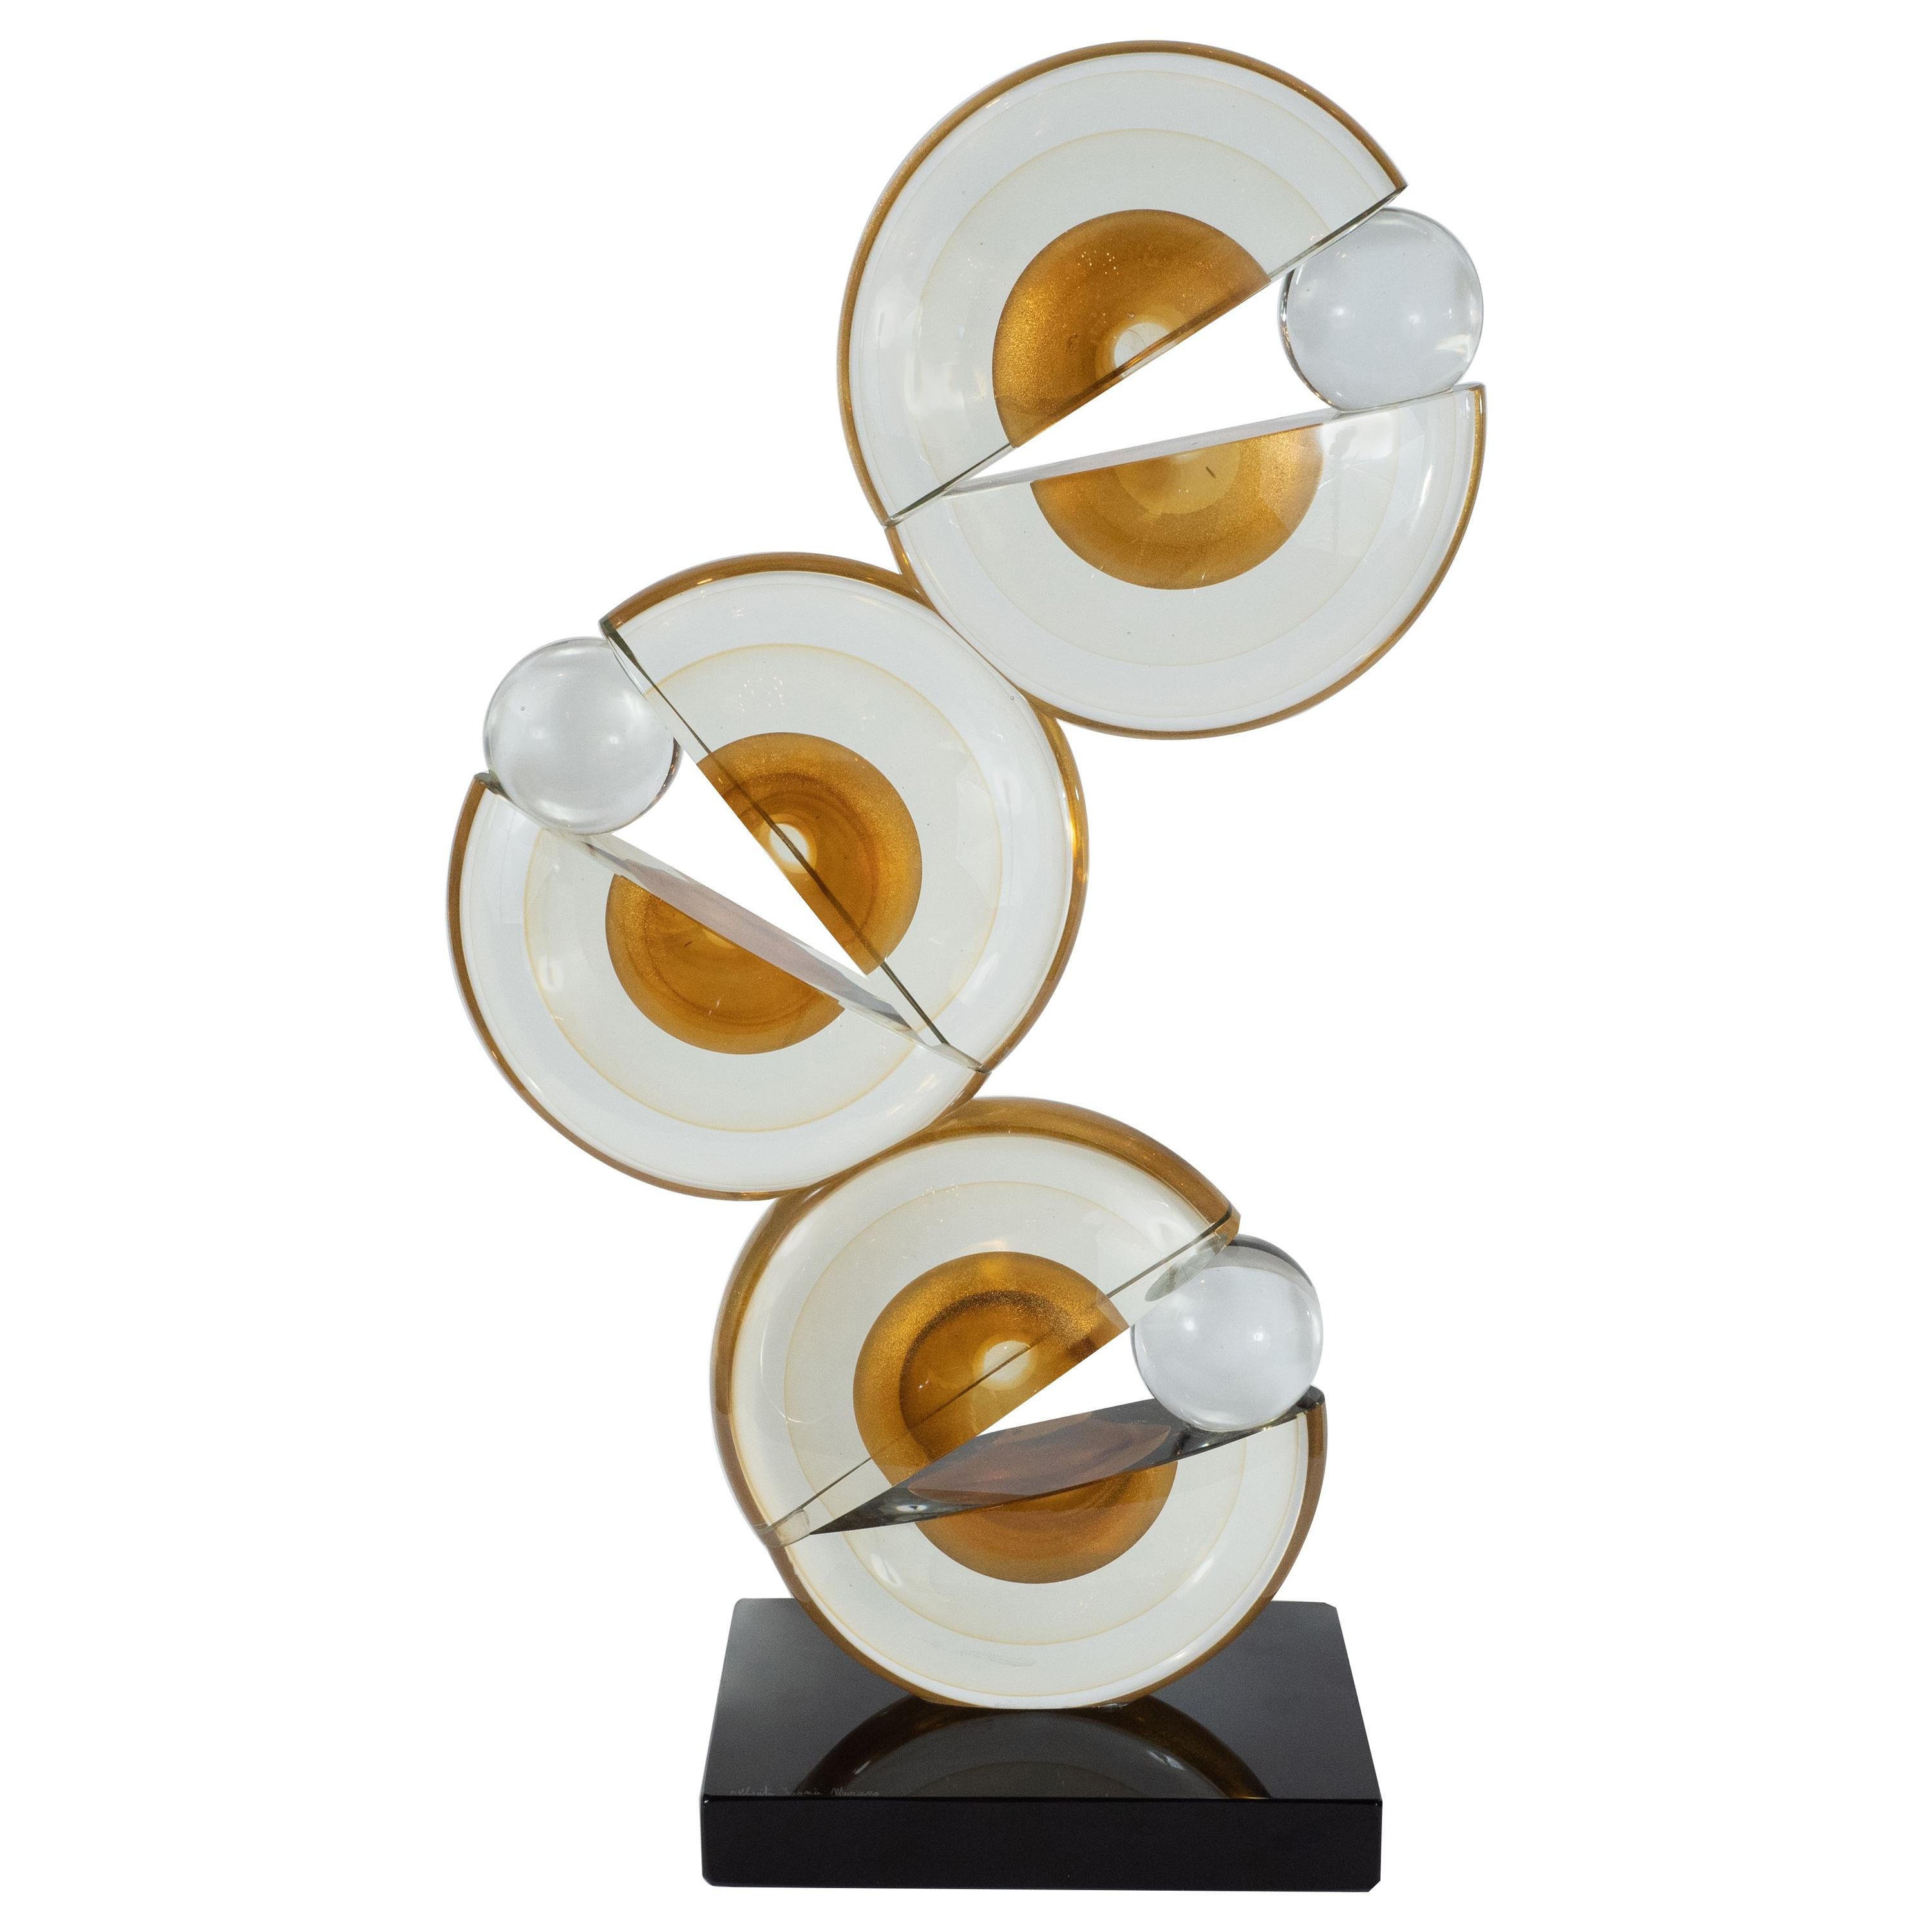 Modernist Handblown Murano Glass Geometric Sculpture with 24-Karat Gold Flecks